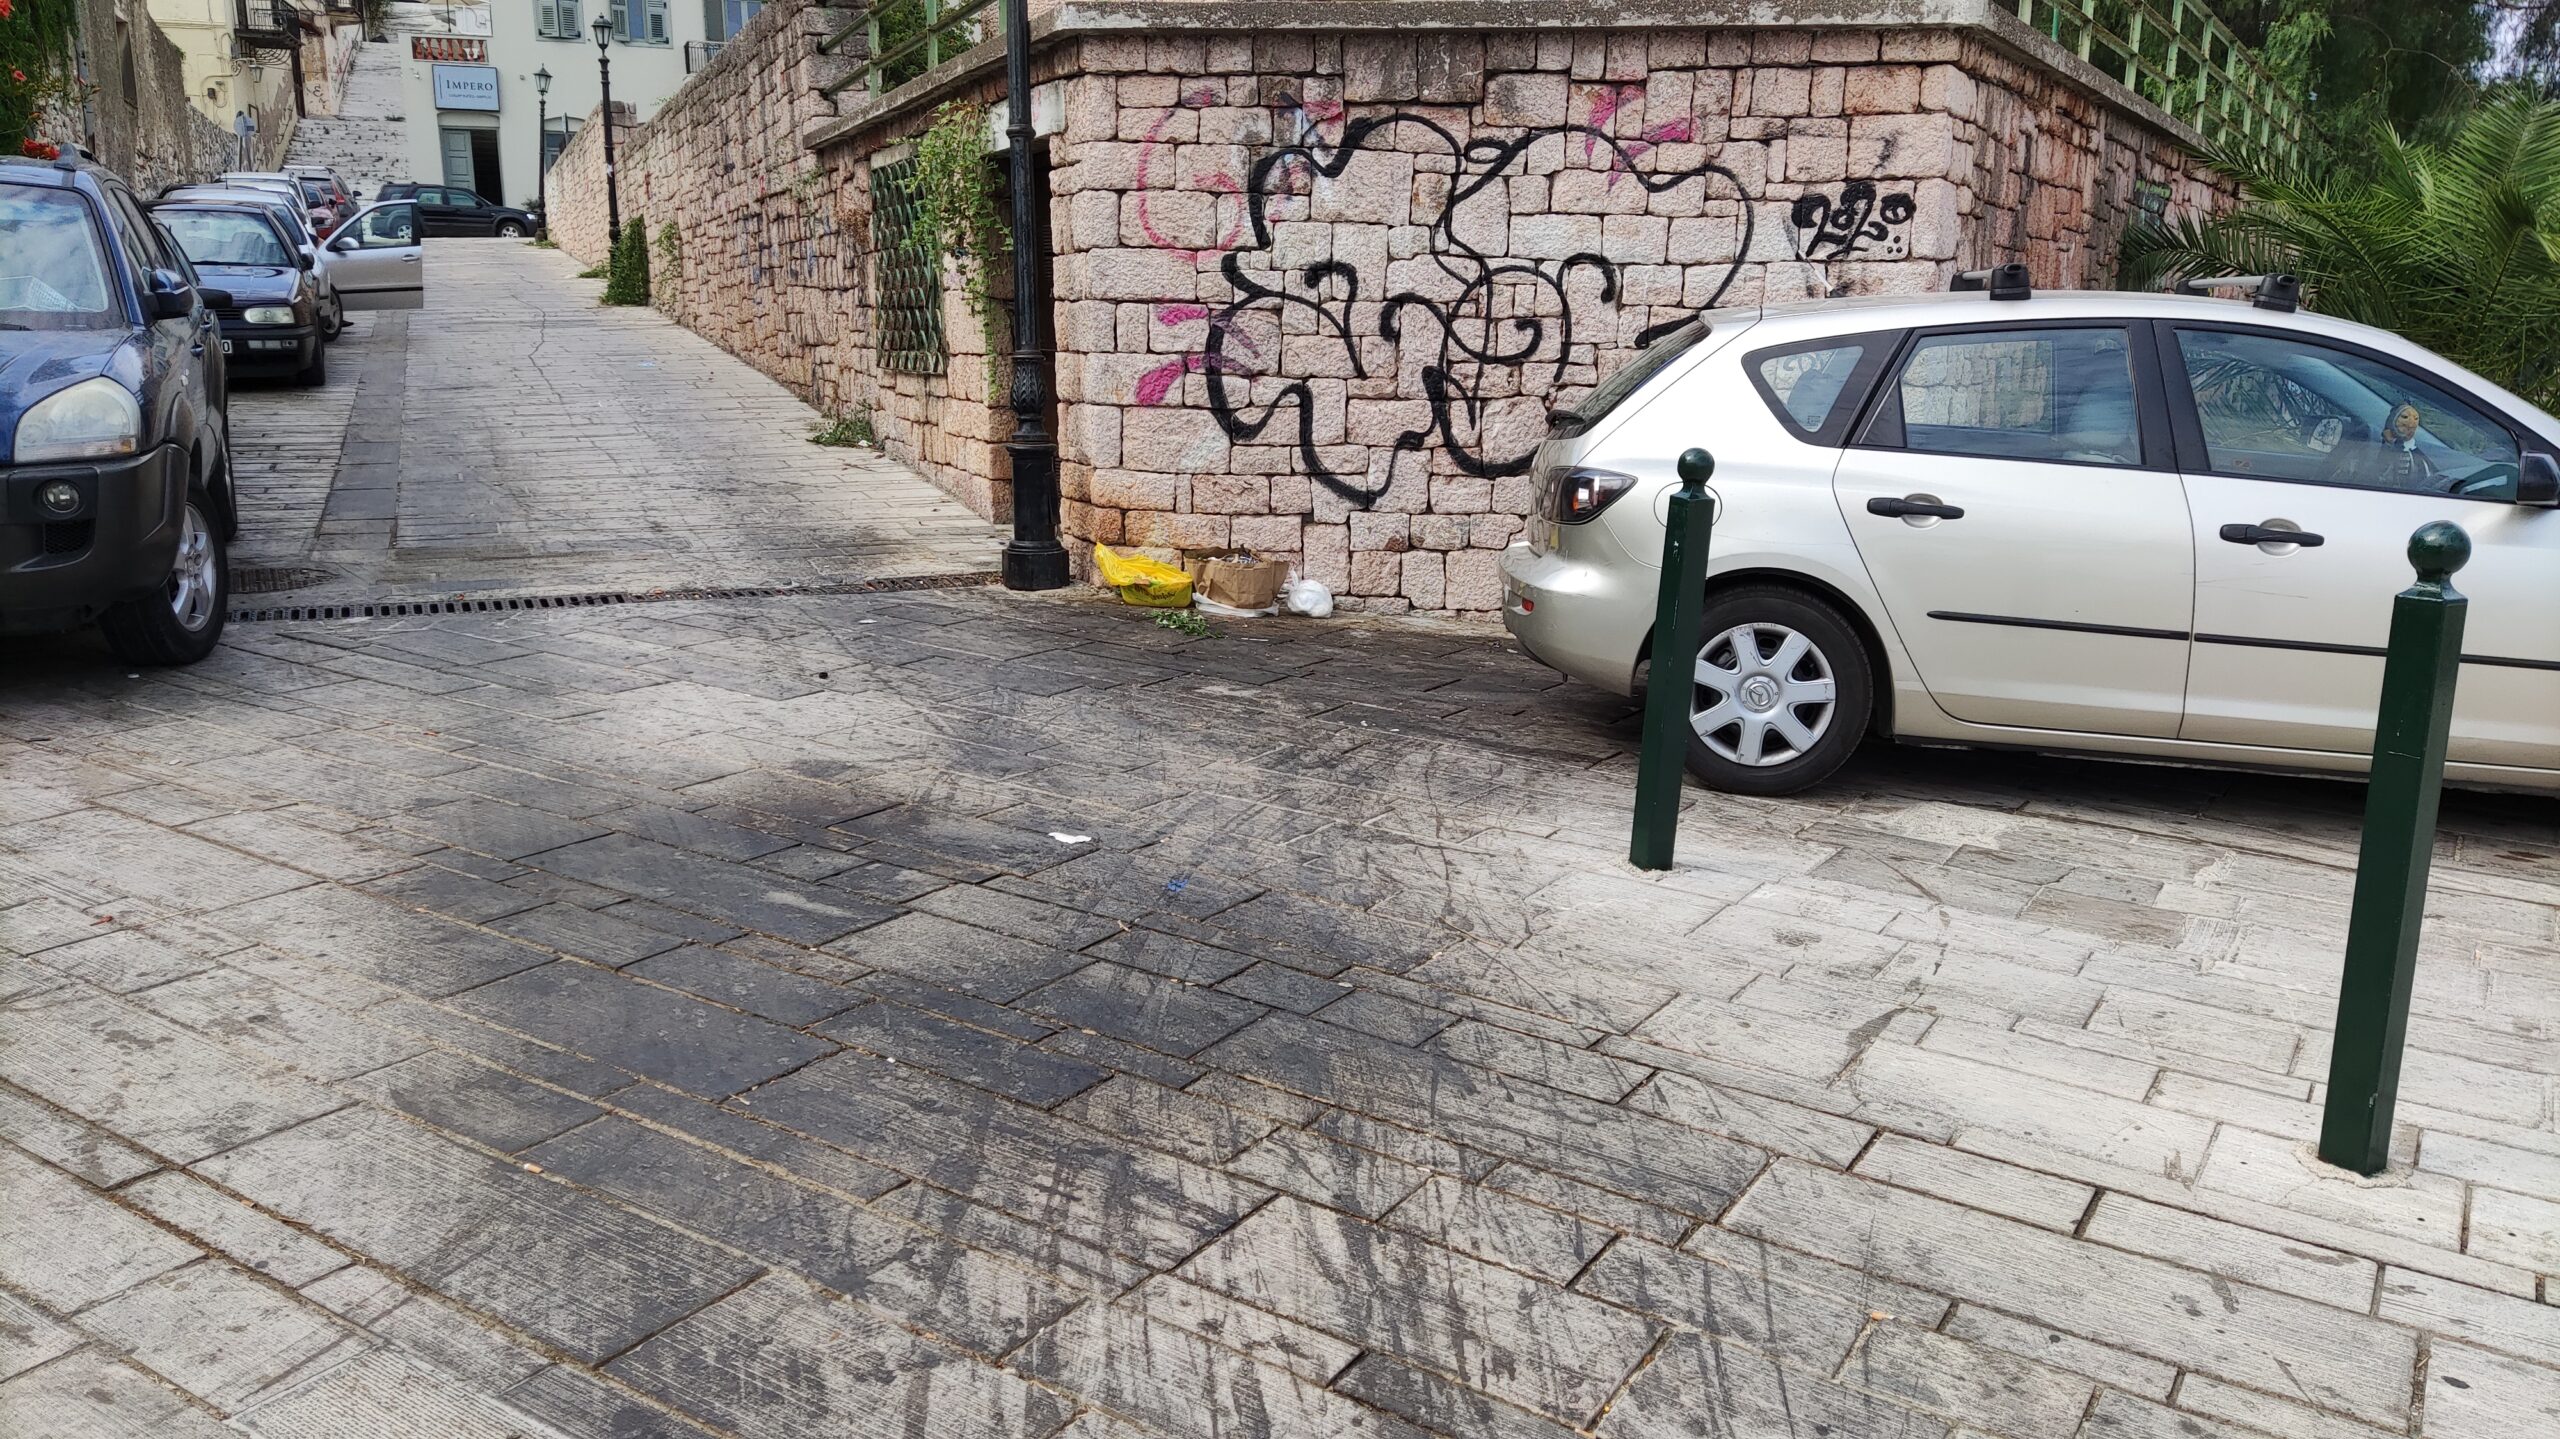 Ναύπλιο: Κόλλησε η σαγιονάρα στη λίγδα από σκουπίδια και έπεσε περαστικός